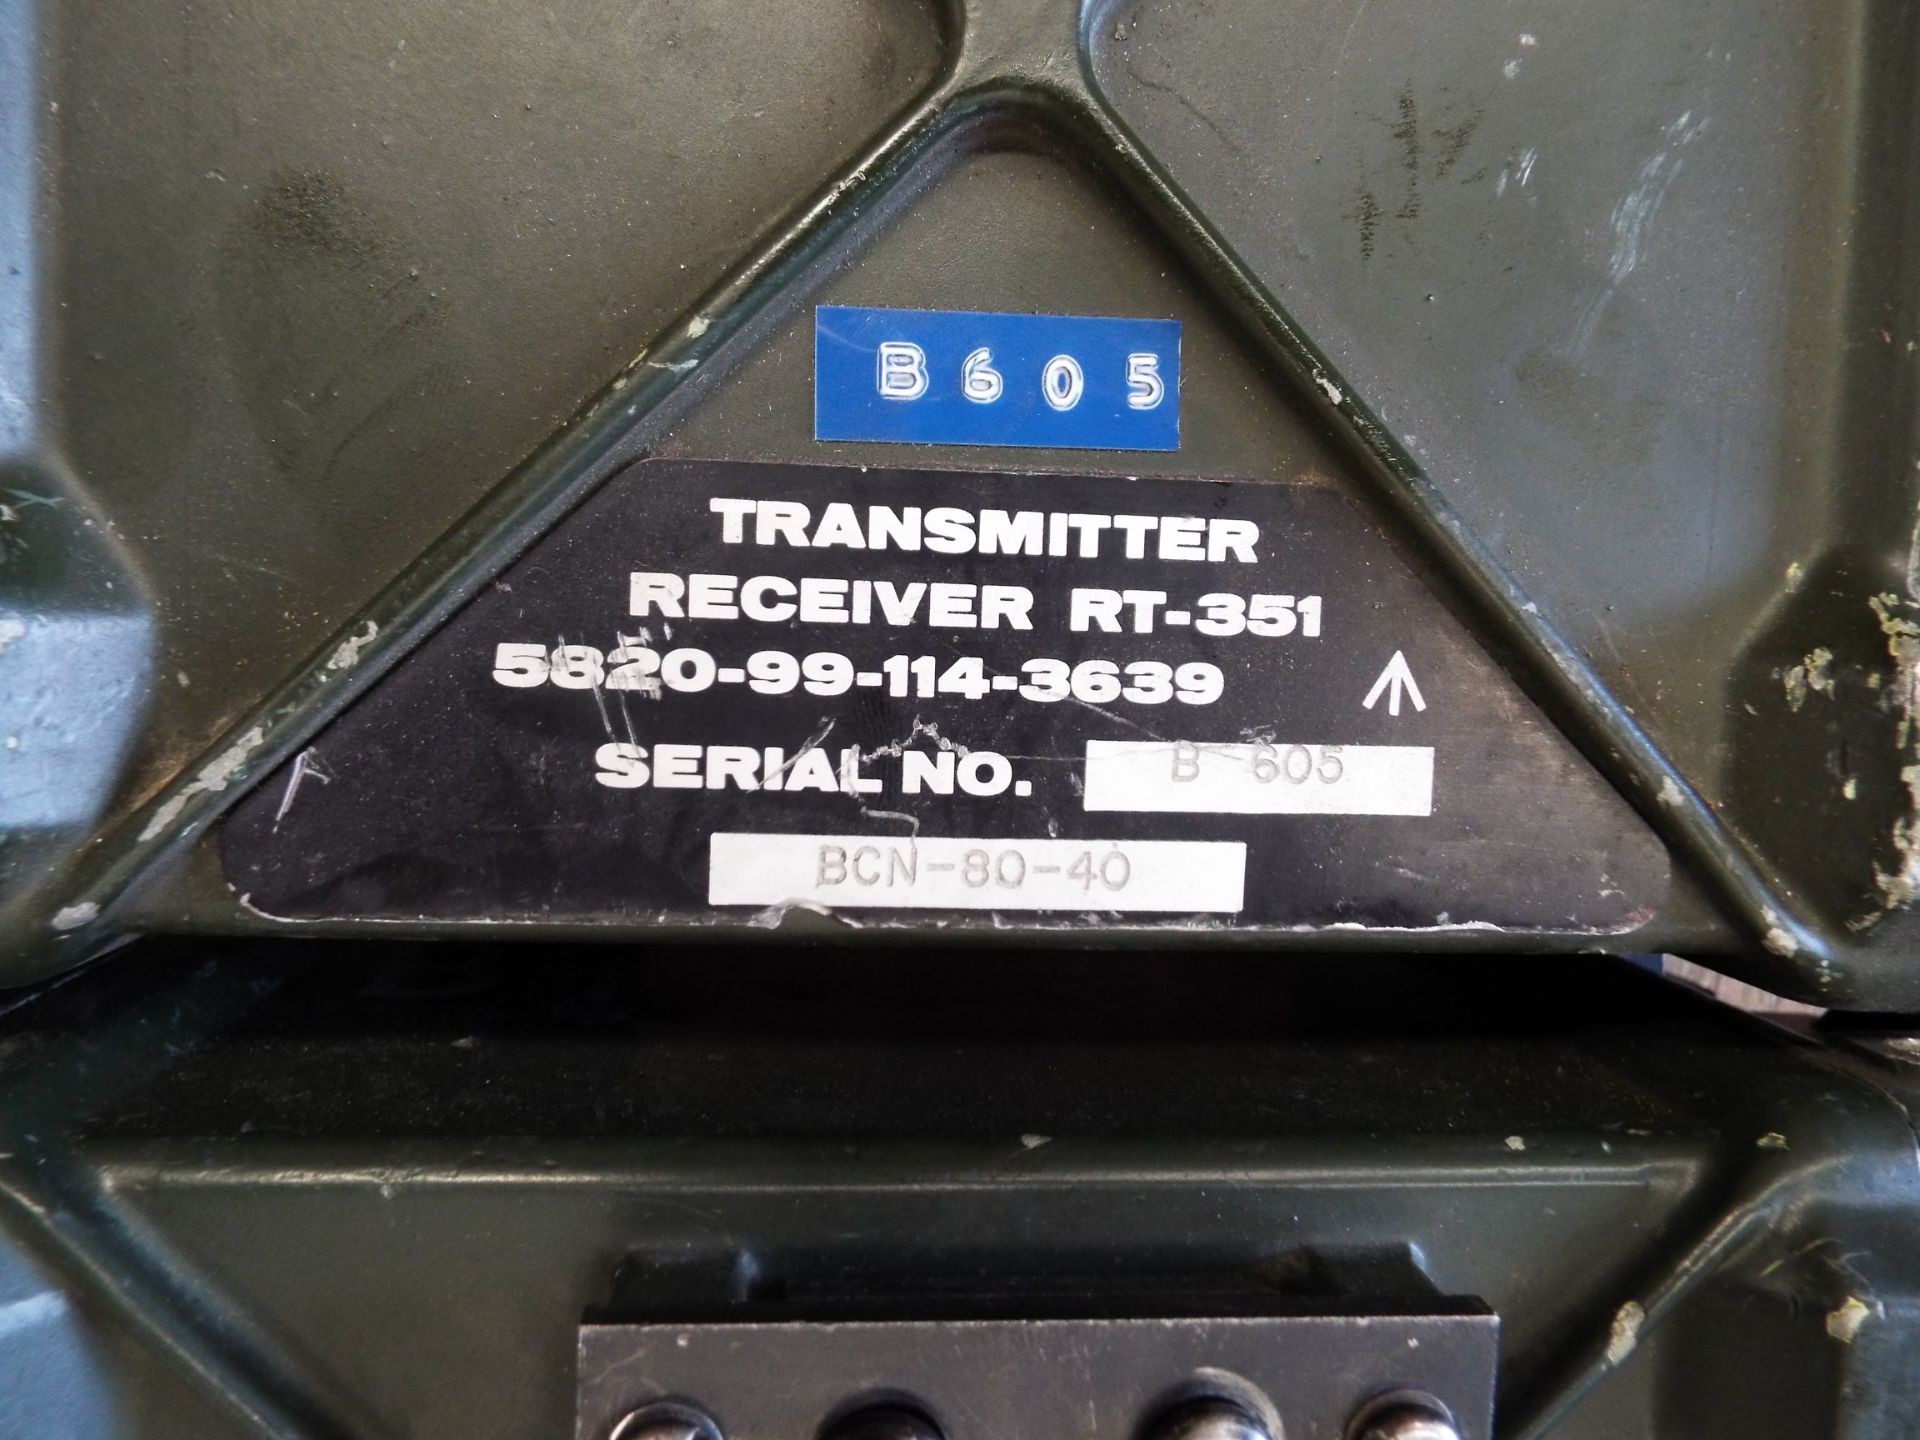 5 x Clansman RT- 351 Transmitter Receivers - Image 4 of 4